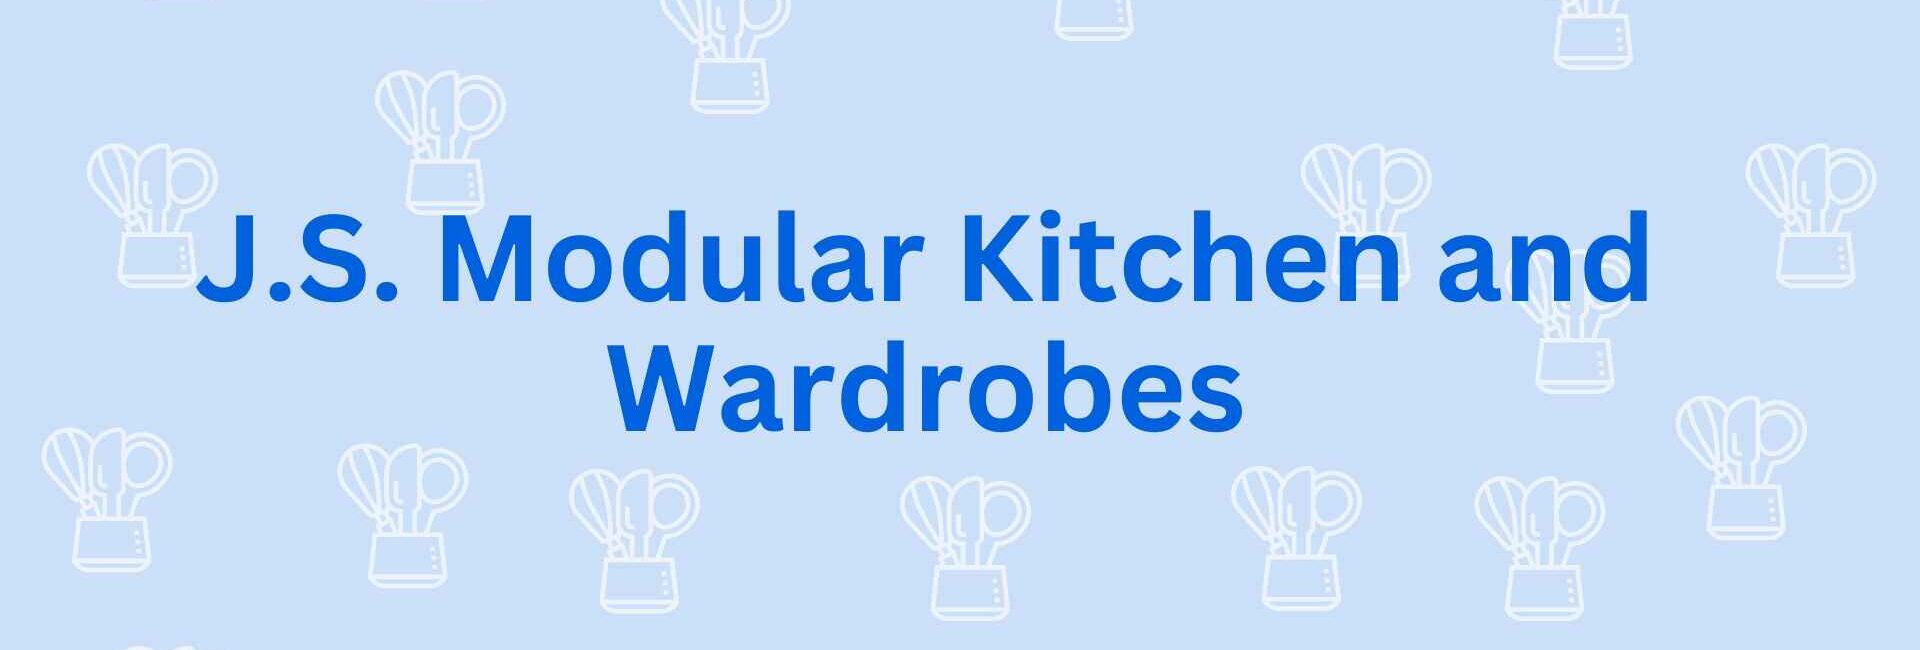 J.S. Modular Kitchen and Wardrobes - Modular Kitchen Dealer in Noida